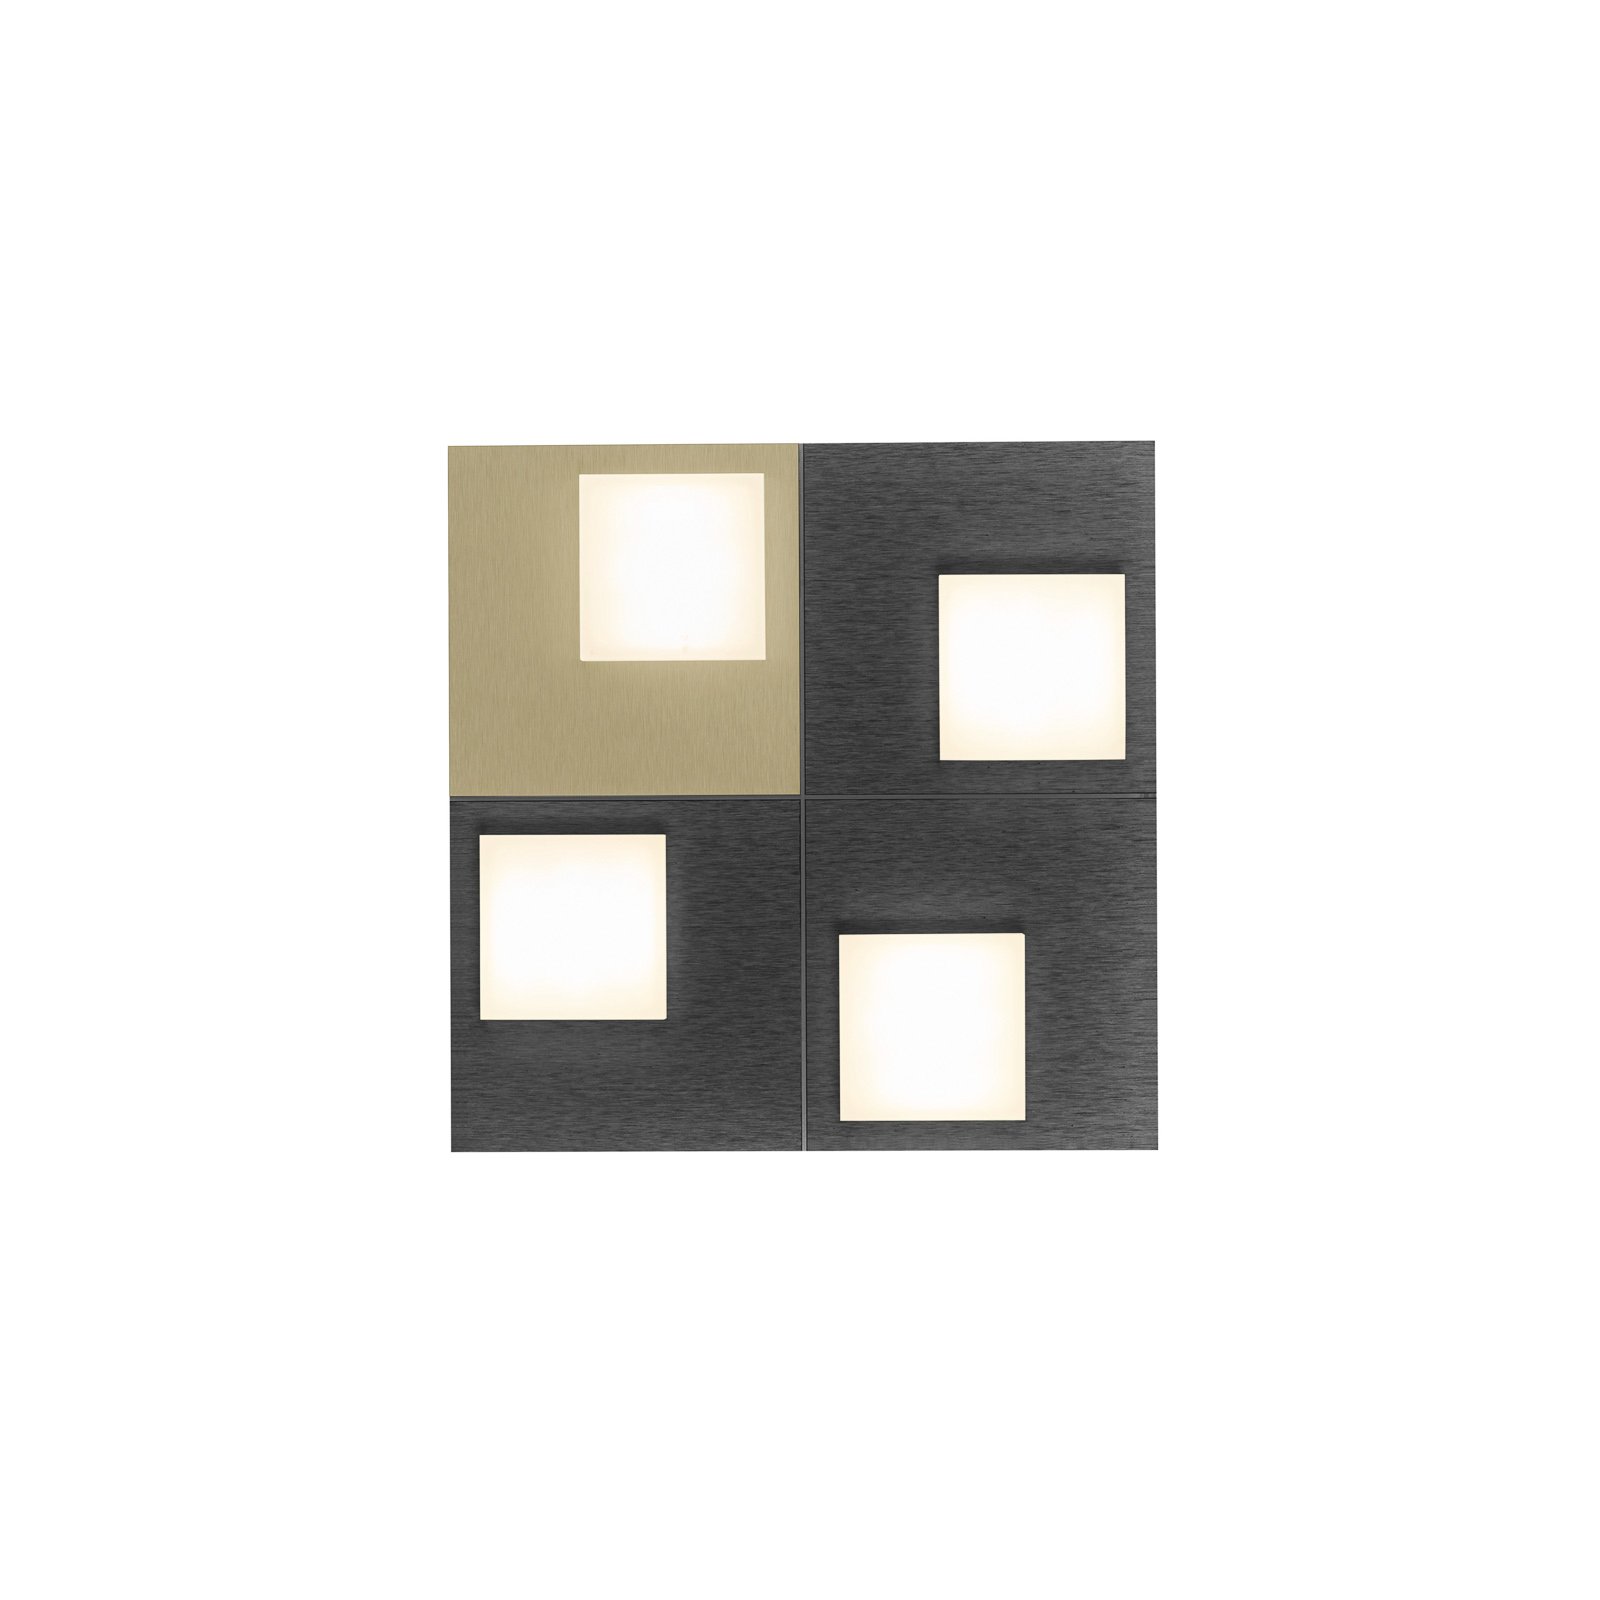 BANKAMP Cube plafón 32W 28x28cm, antracita